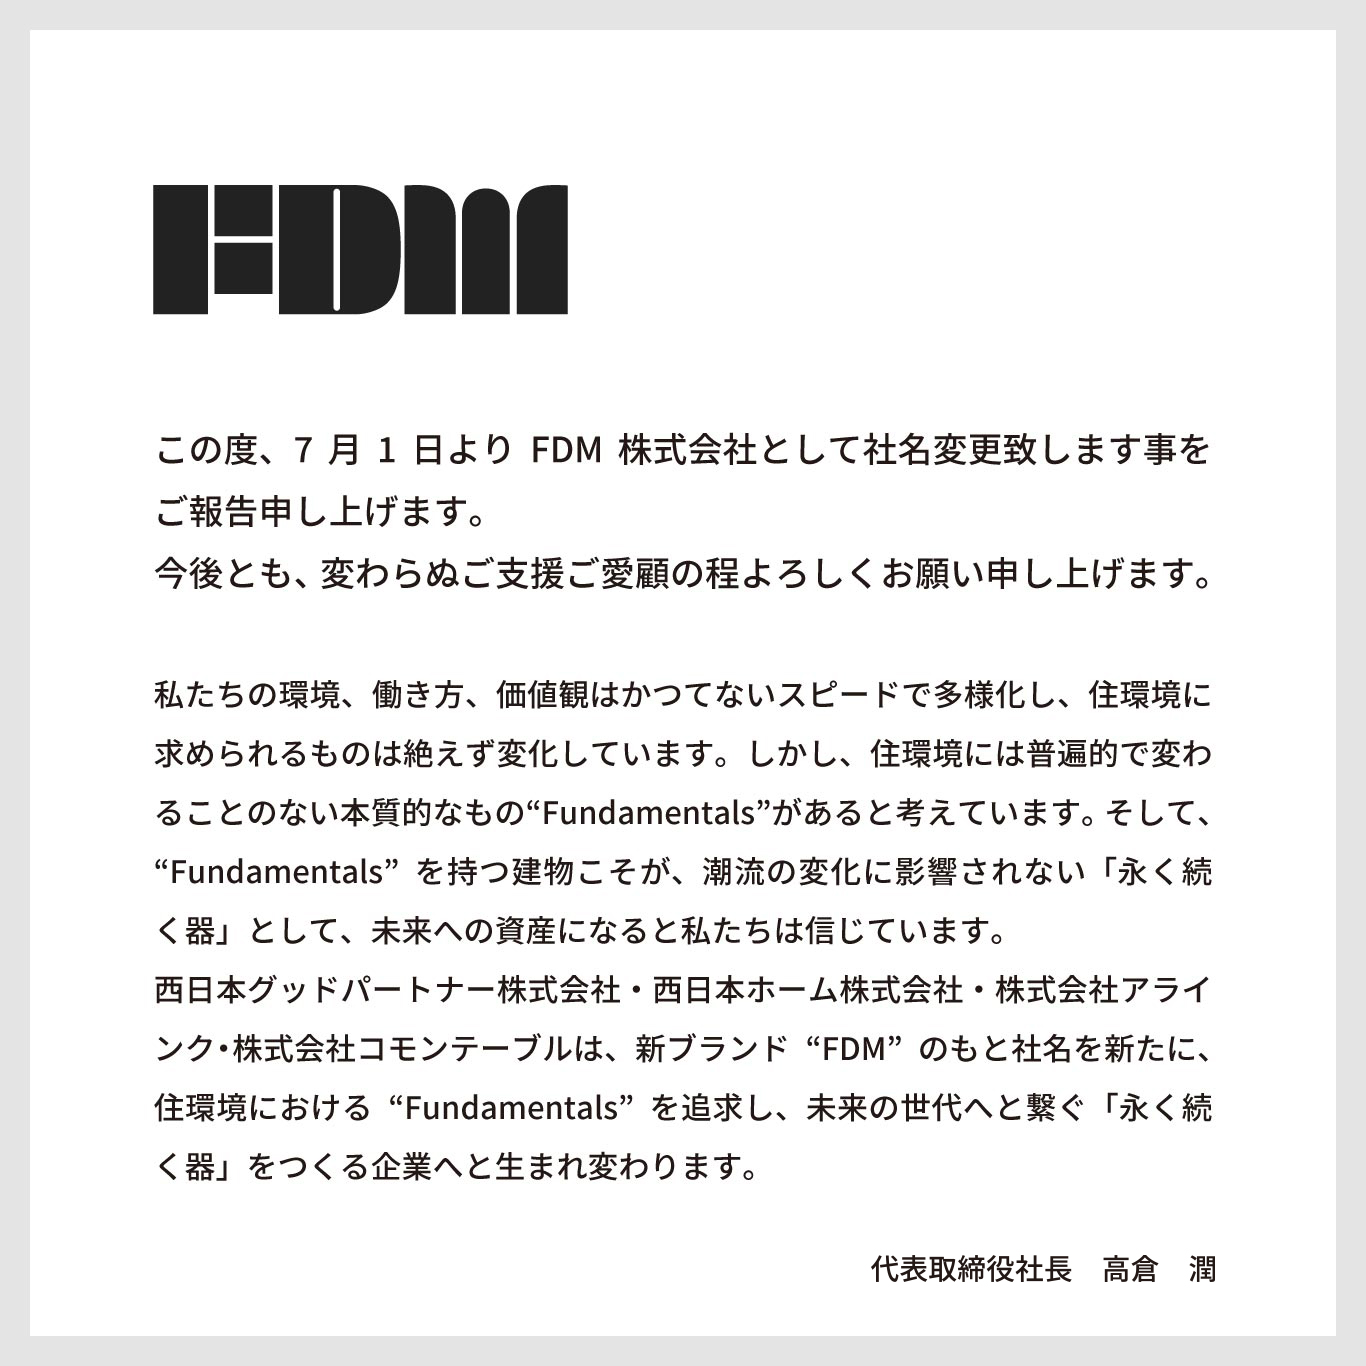 この度、7月1日よりFDM株式会社として社名変更致します事をご報告申し上げます。